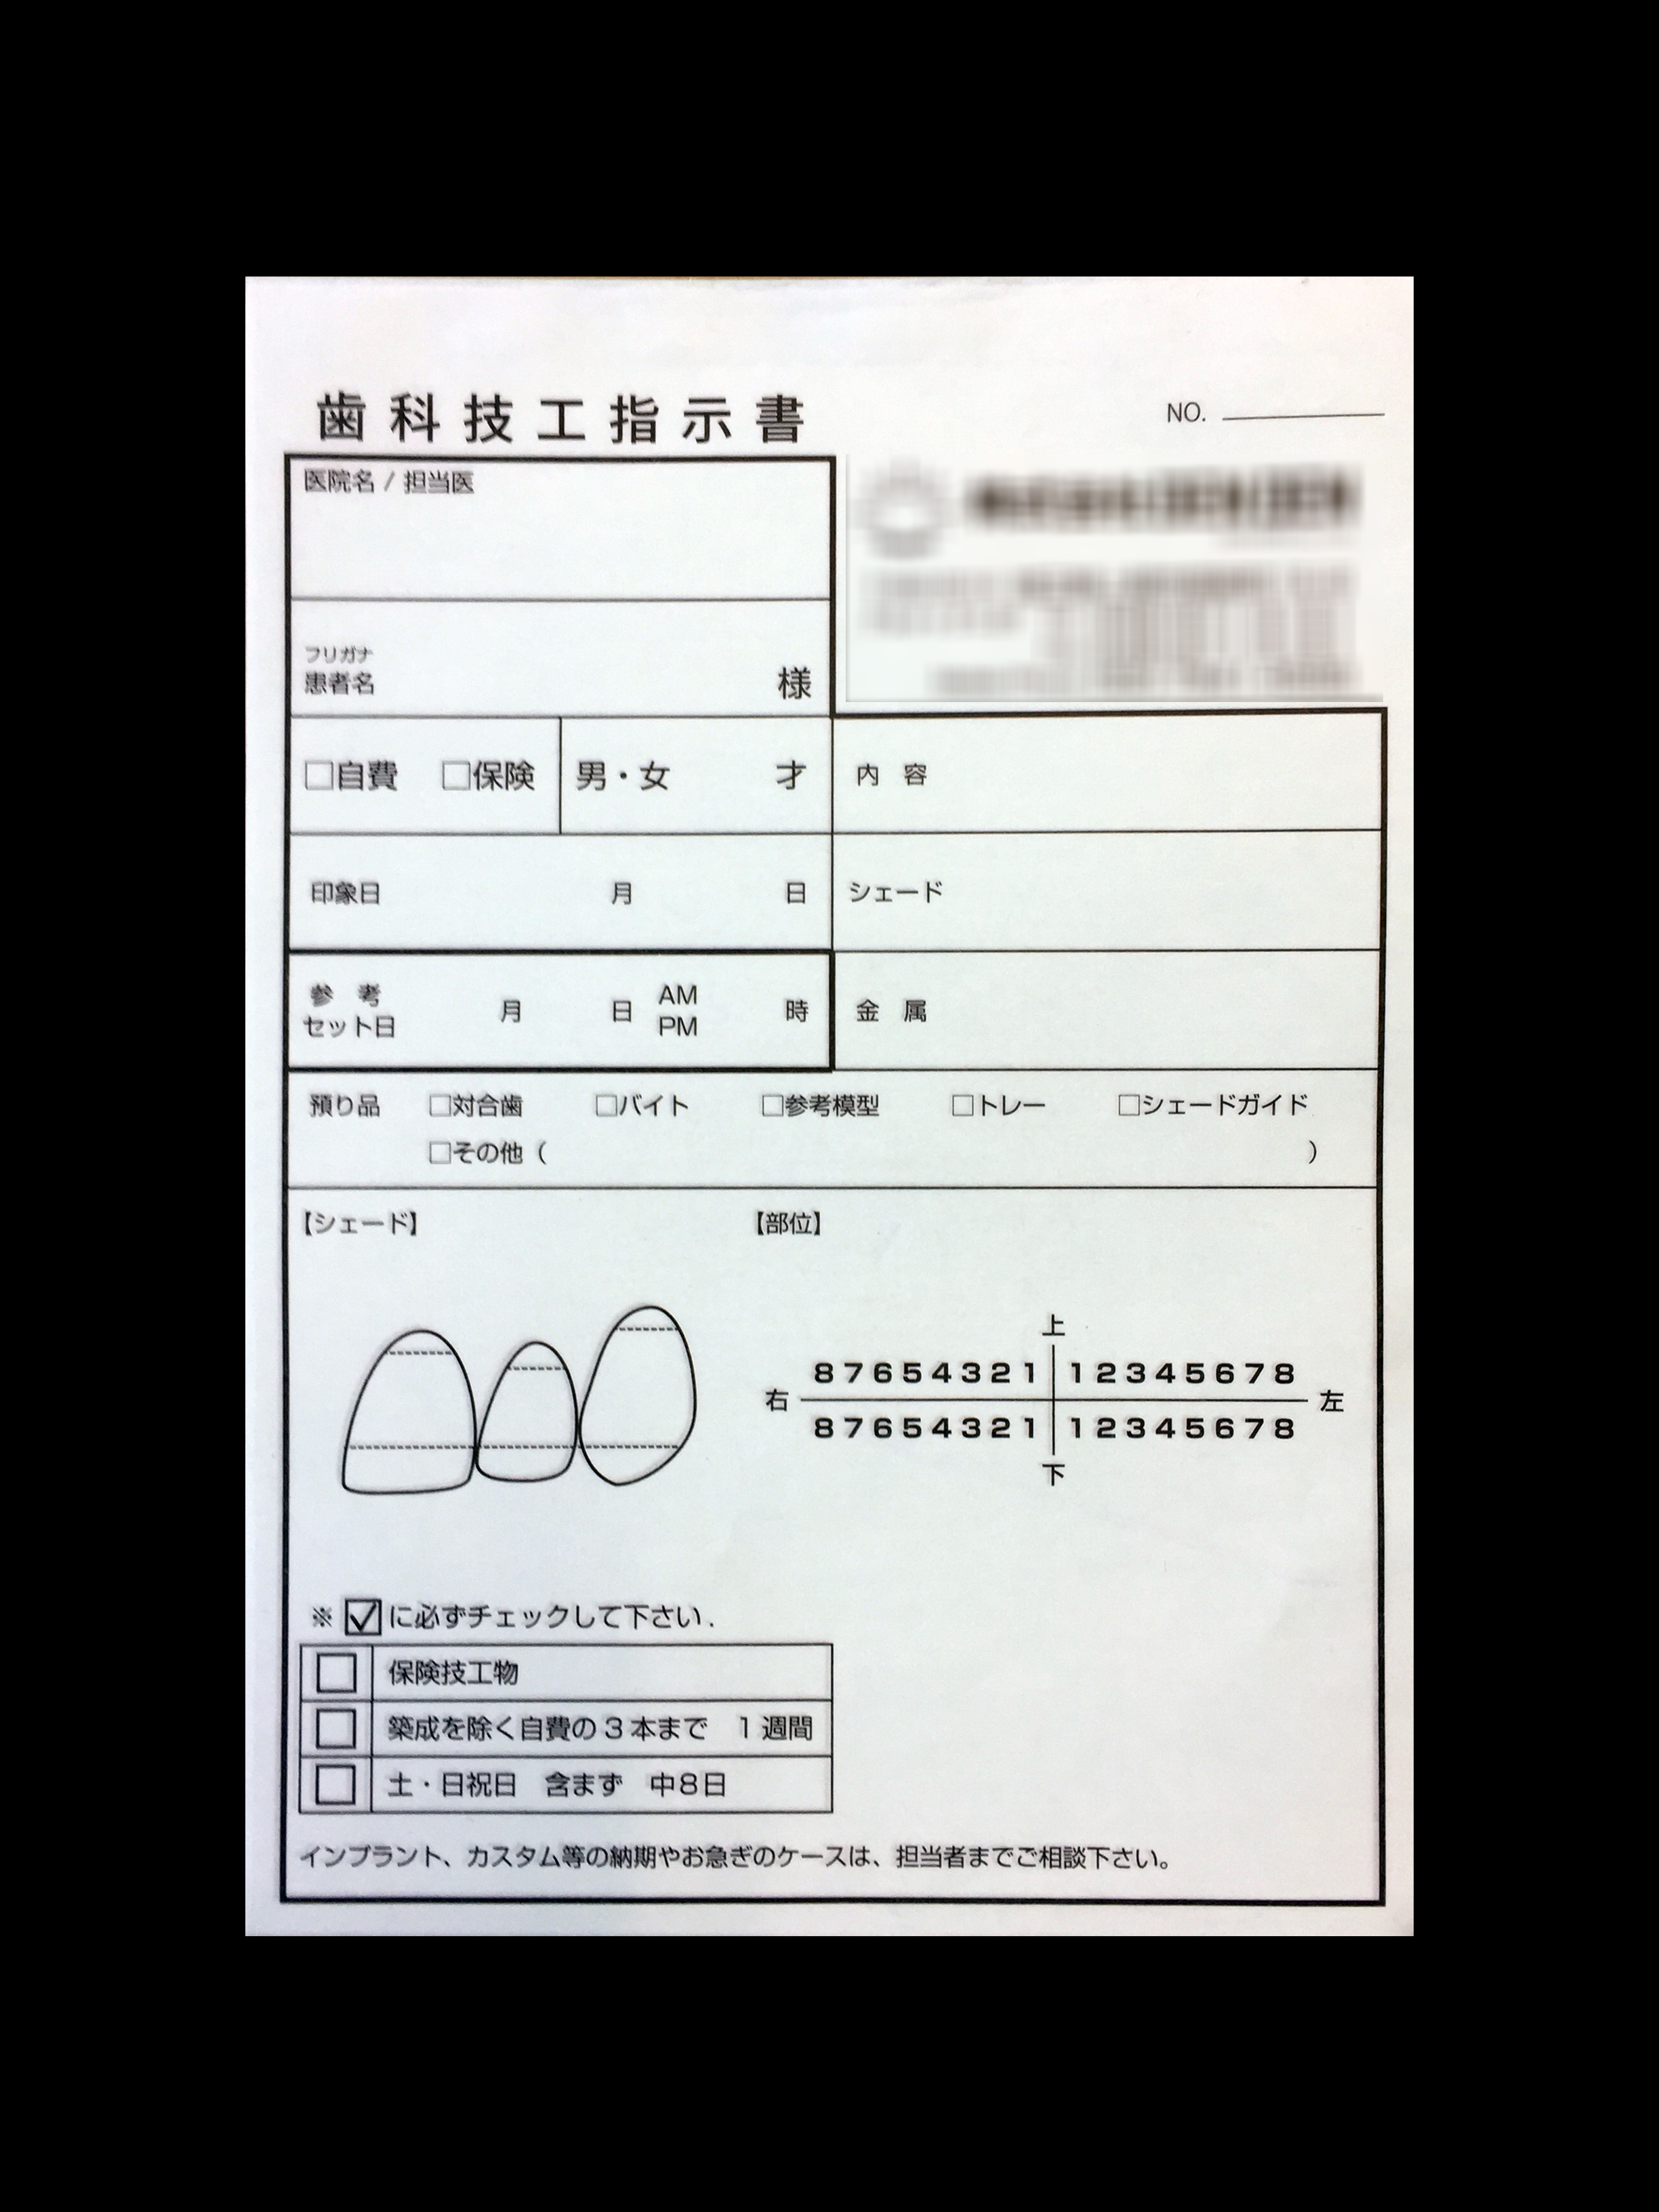 歯科業で使用する歯科技工指示書(3枚複写)の伝票作成実績